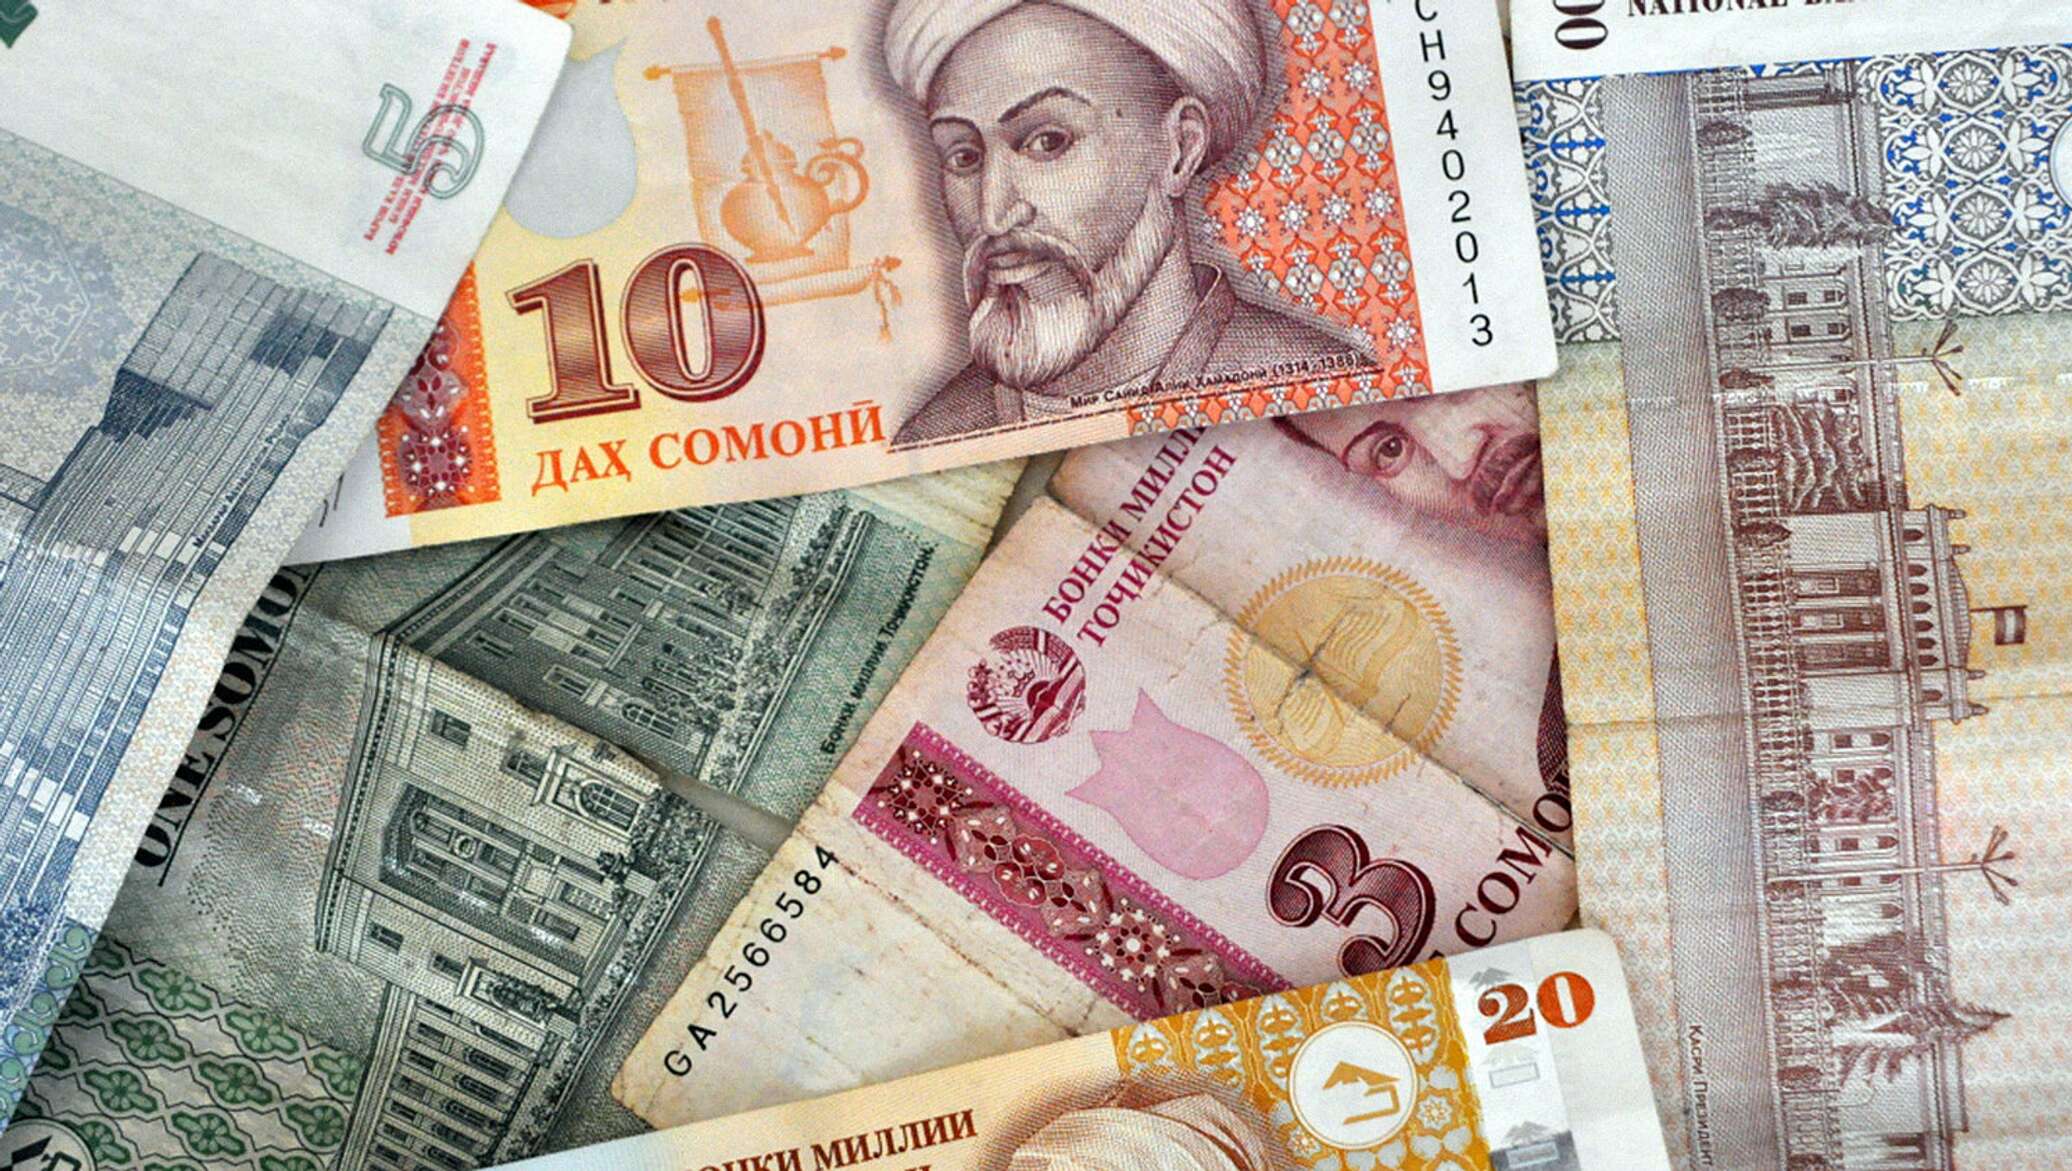 Таджикские деньги курс. Деньги Таджикистана. Деньги Сомони. Купюра Сомони. Национальная валюта Таджикистана.